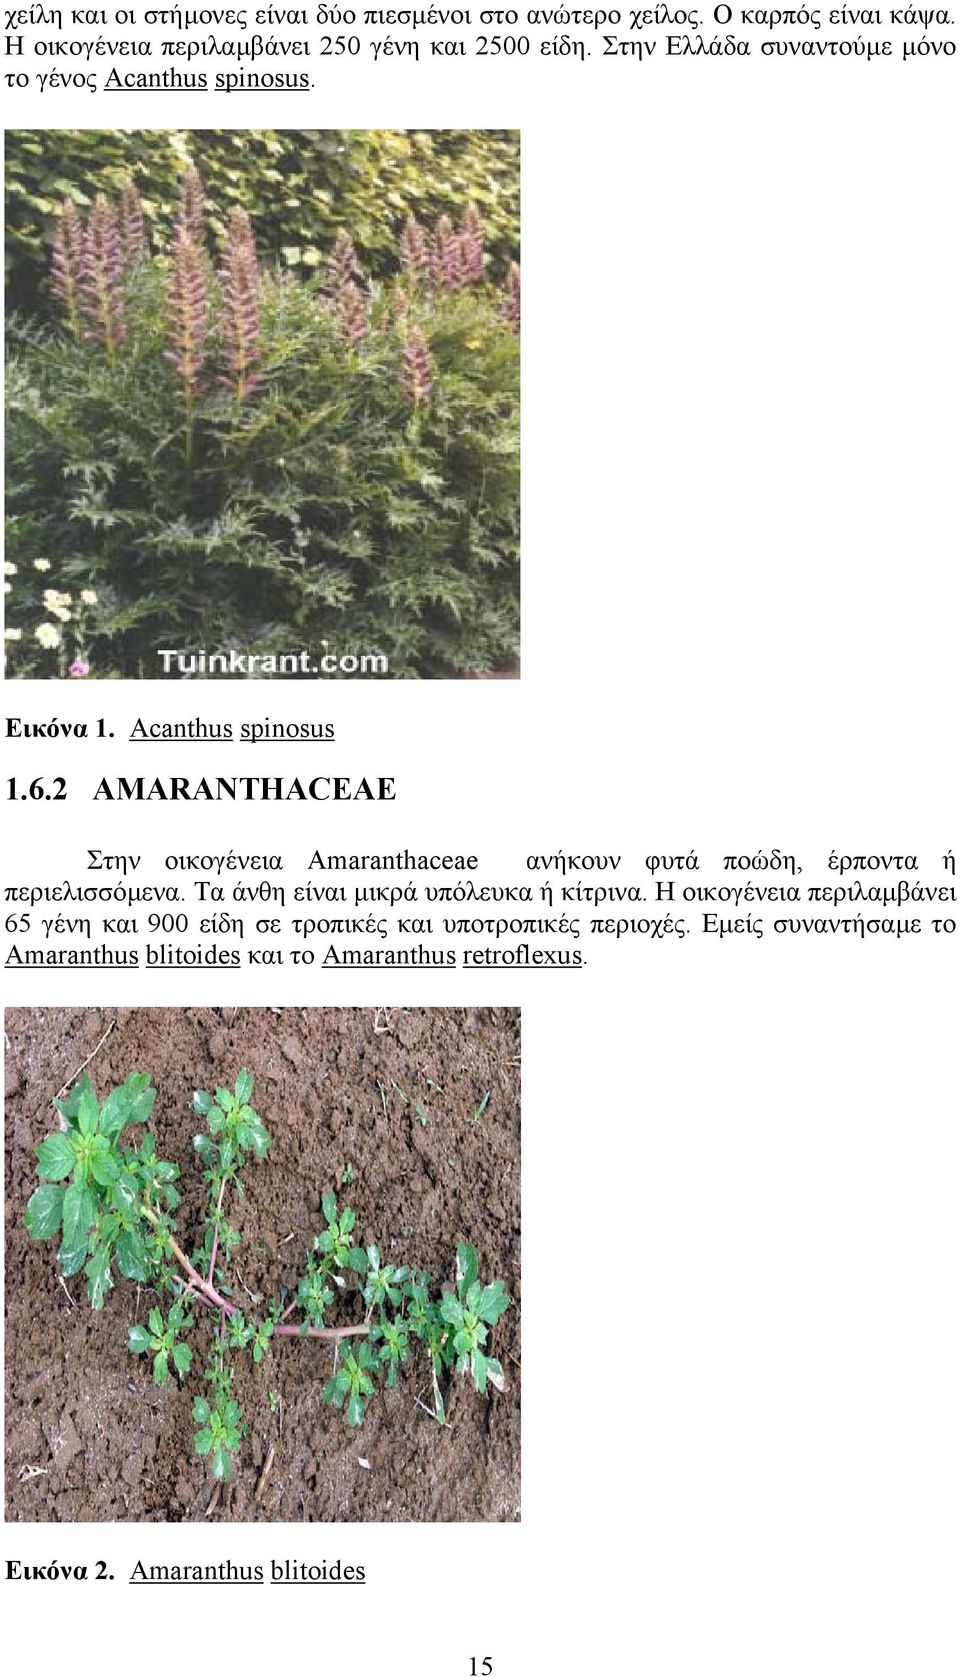 2 AMARANTHACEAE Στην οικογένεια Amaranthaceae ανήκουν φυτά ποώδη, έρποντα ή περιελισσόµενα. Τα άνθη είναι µικρά υπόλευκα ή κίτρινα.